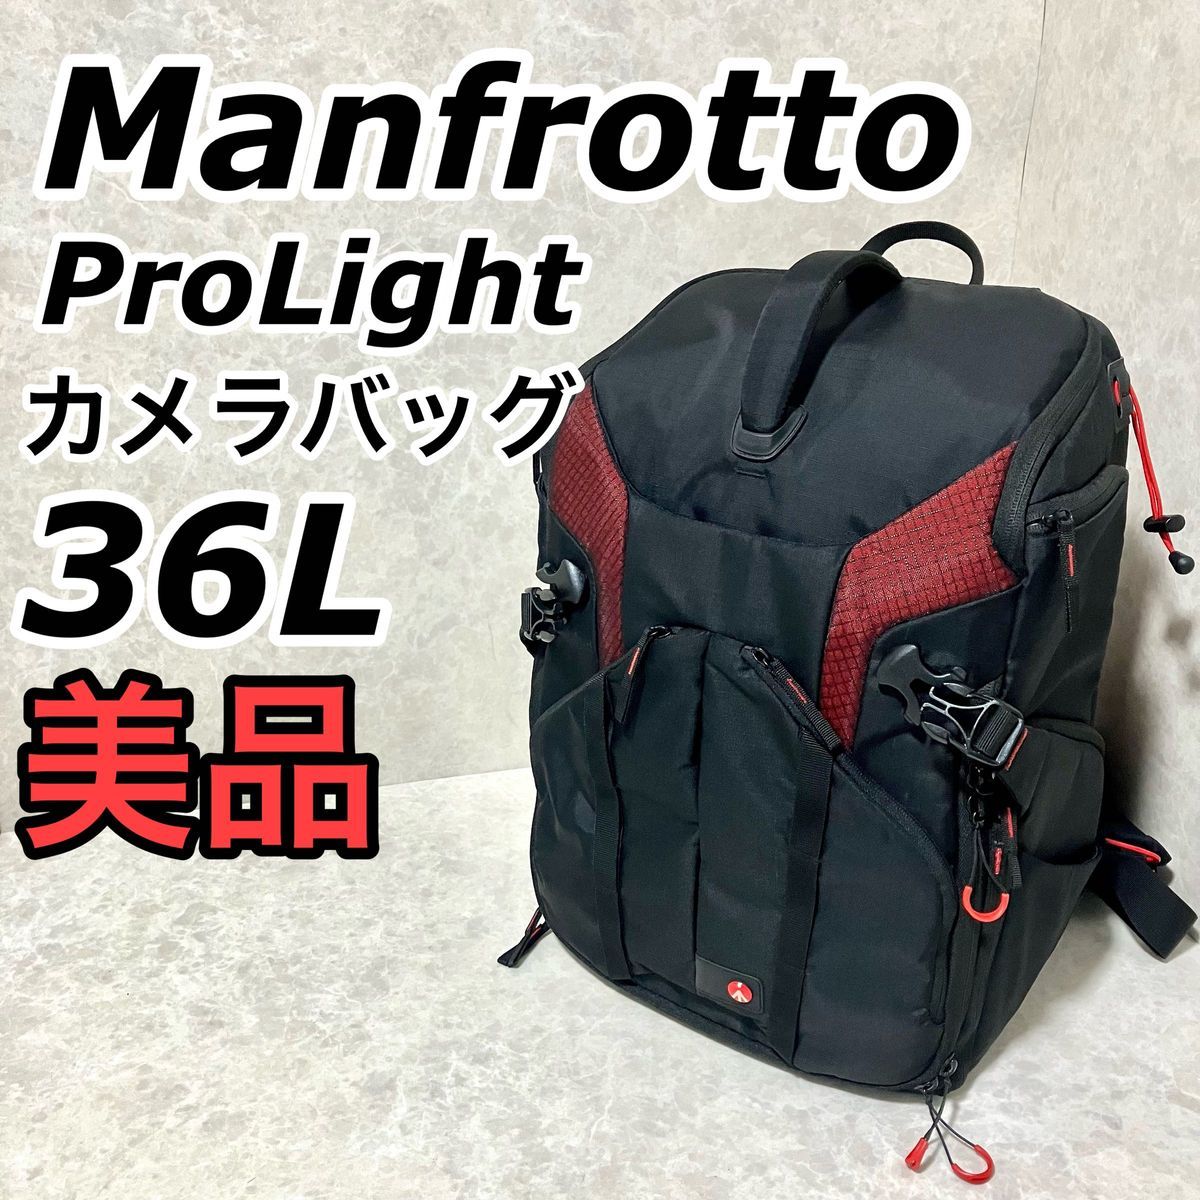 マンフロット Pro Light 3N1-36 Camera Backpack Manfrotto カメラバッグ カメラ バッグ リュック